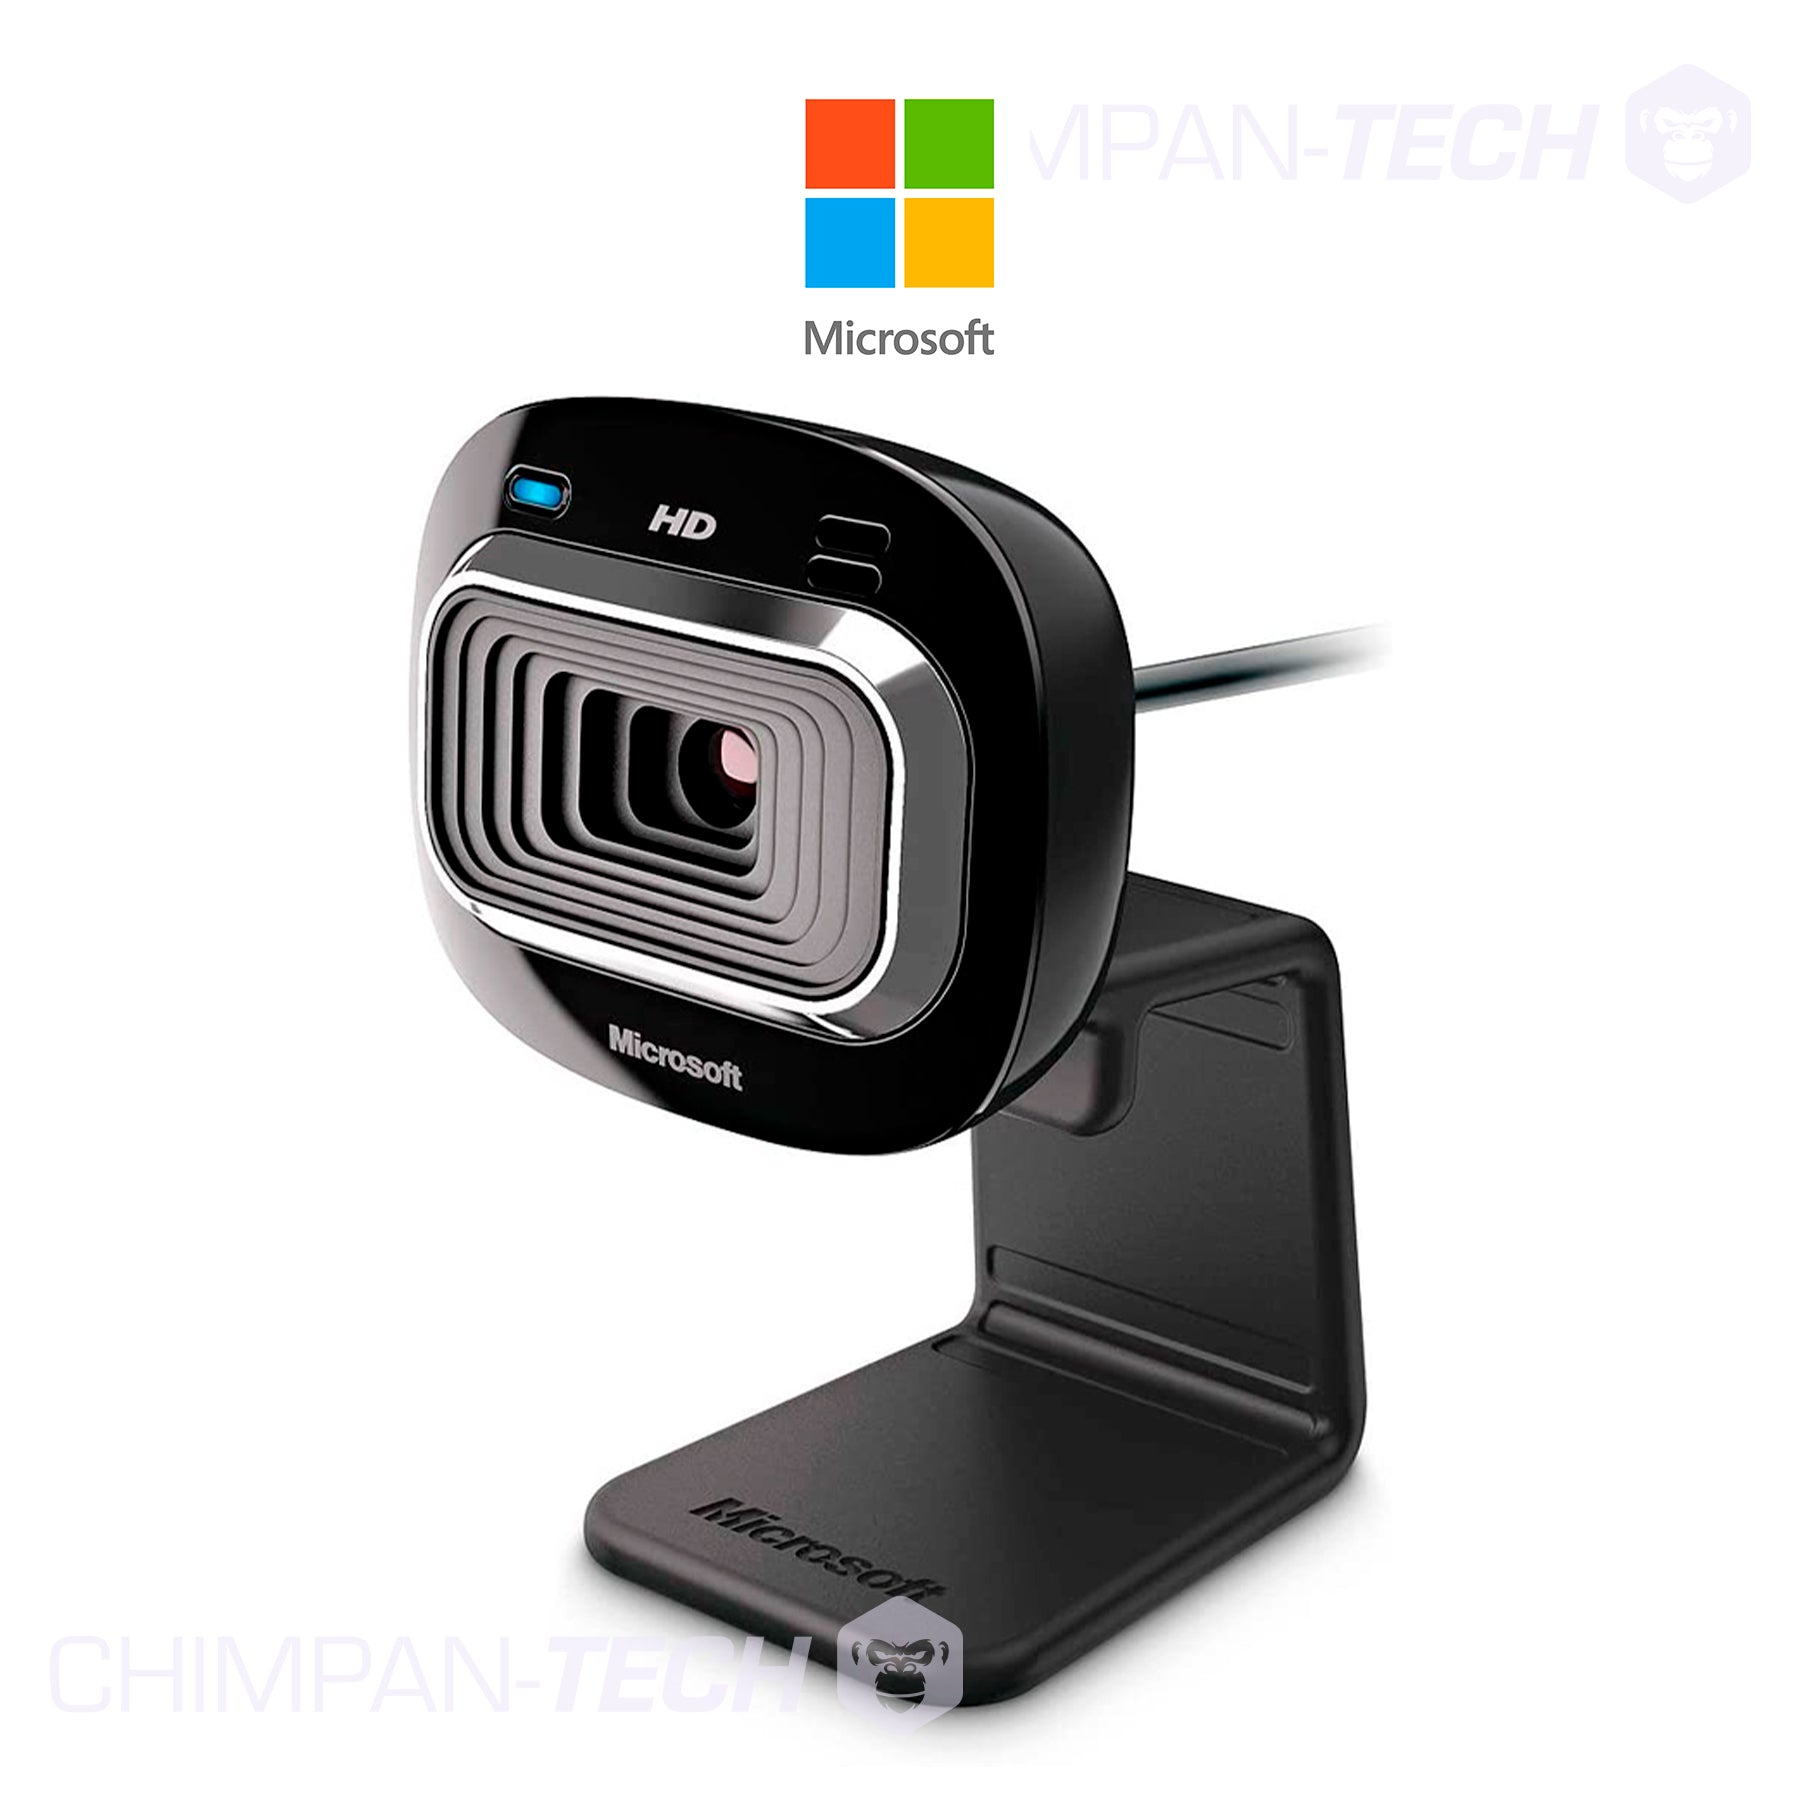 Camara web Microsoft LifeCam HD-3000 for Business, HD 720p, Micrófono integrado, USB